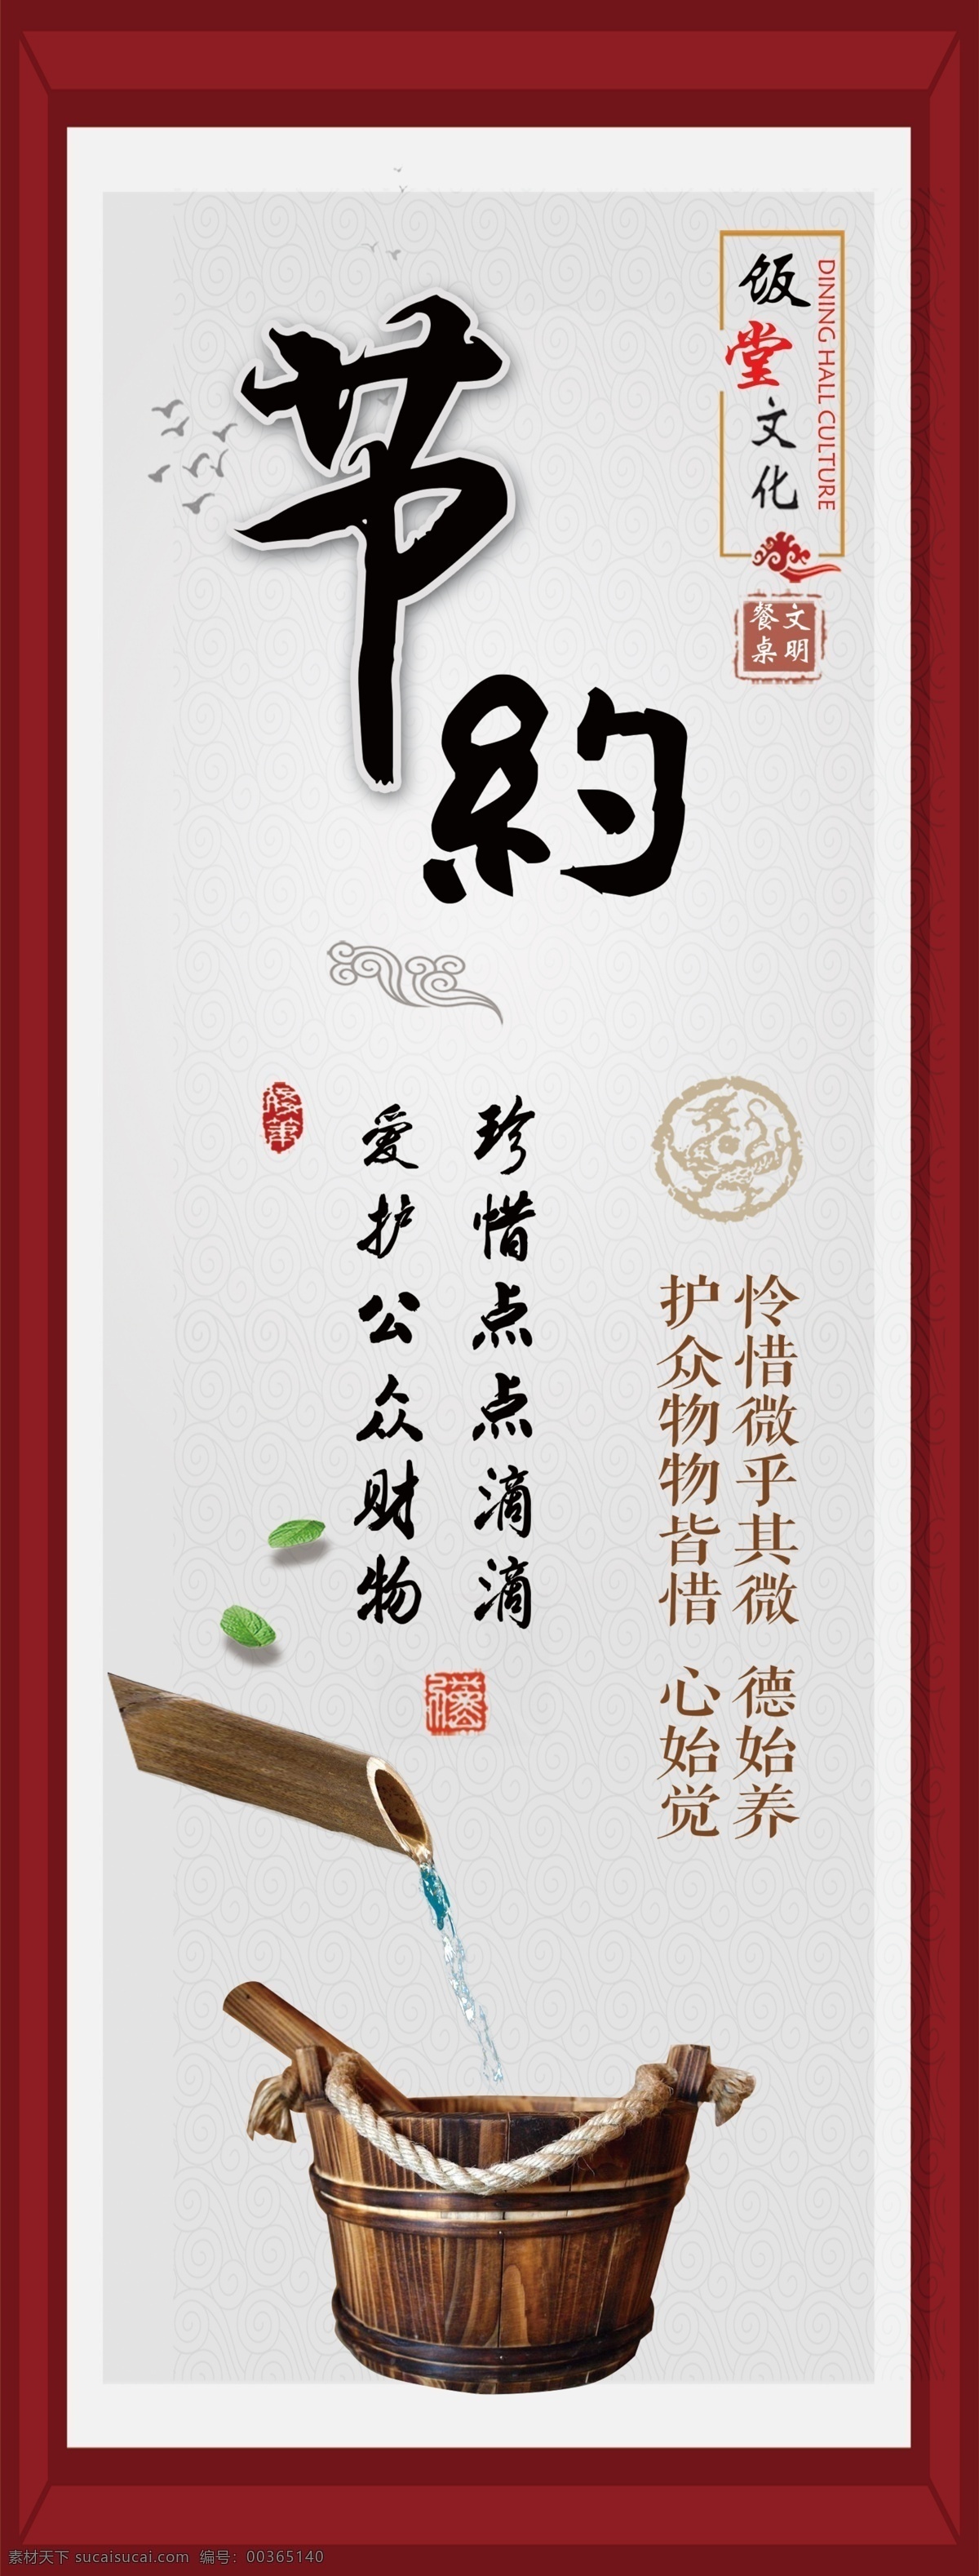 饭堂标语 标语 古典 中国风 整洁 干净 食堂标语 饭堂 节约 室内广告设计